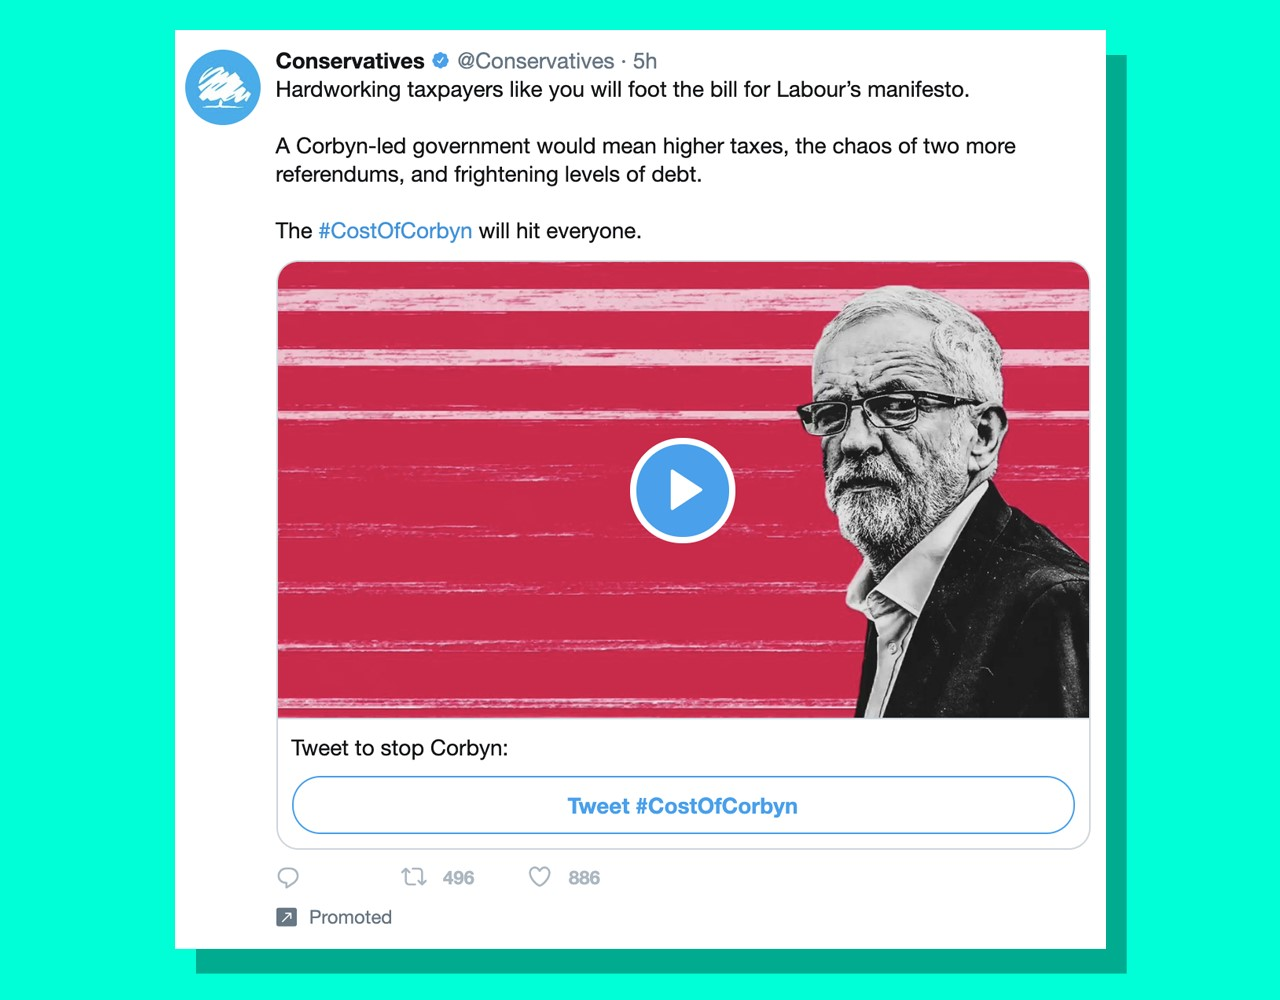 Реклама в Твиттере, размещенная консерваторами. На изображении изображен Джереми Корбин и написано: «Твитните, чтобы остановить Корбина».